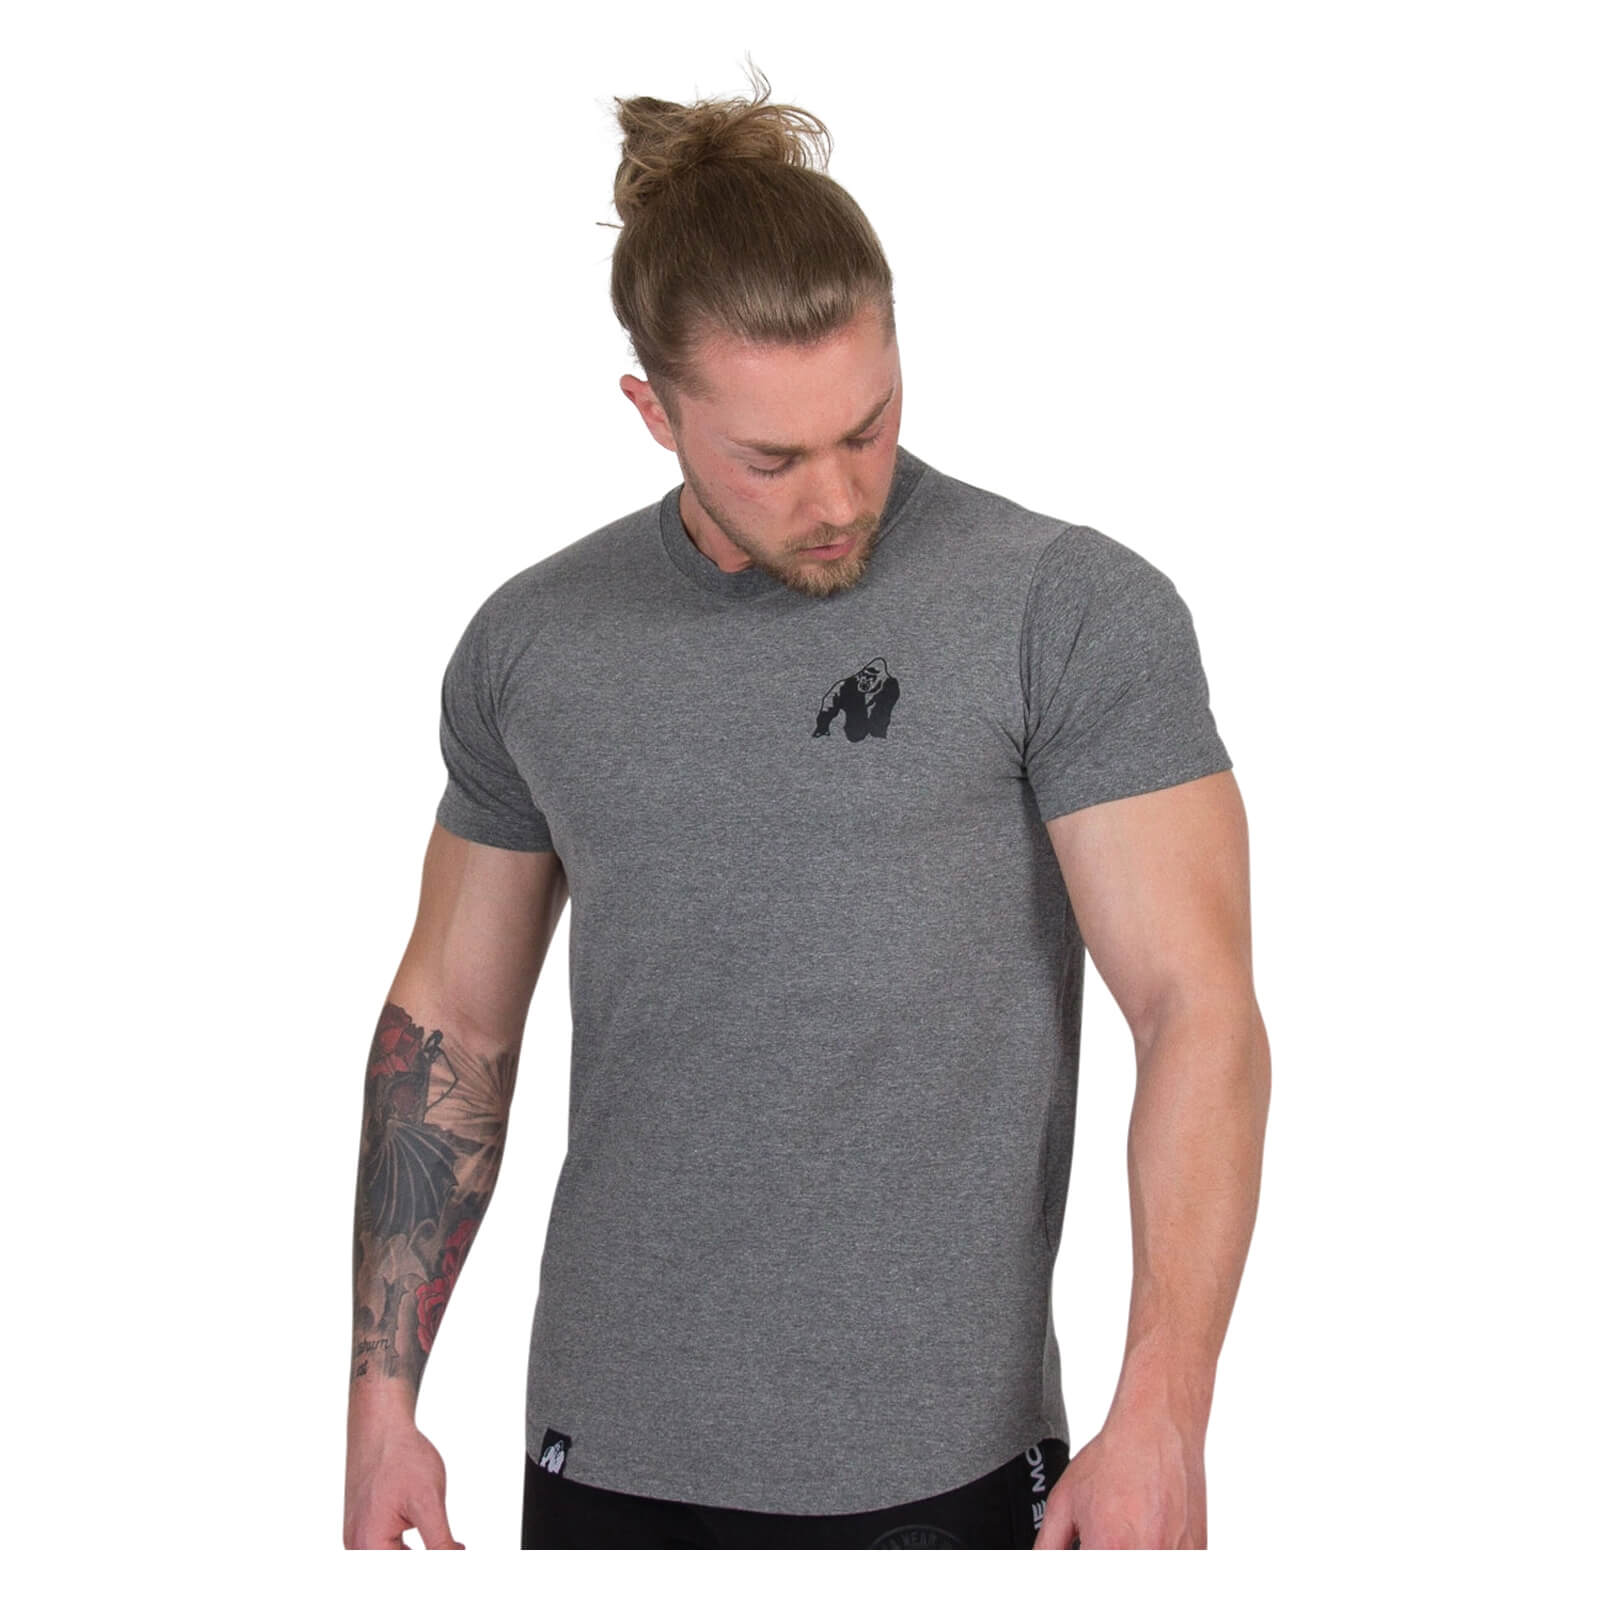 Sjekke Bodega T-Shirt, grey, Gorilla Wear hos SportGymButikken.no